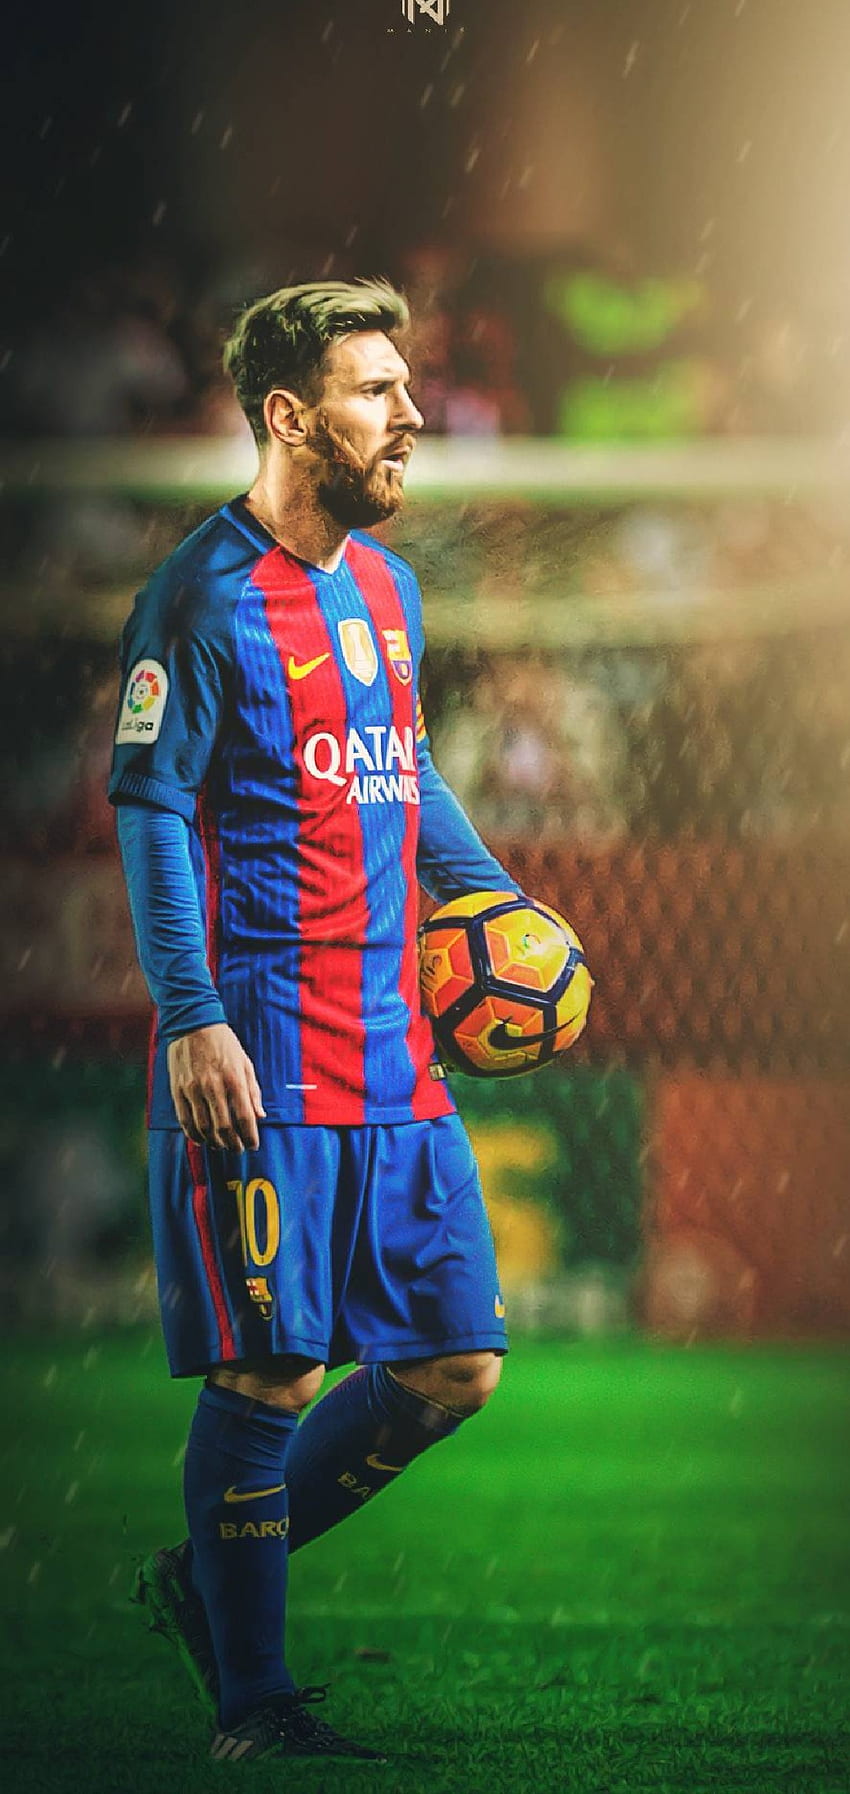 Hãy truy cập để tải ngay những hình nền Messi đẹp mắt cho máy tính của bạn. Bộ sưu tập gồm những hình ảnh nổi bật và độc đáo của siêu sao này sẽ khiến bạn không thể bỏ qua.